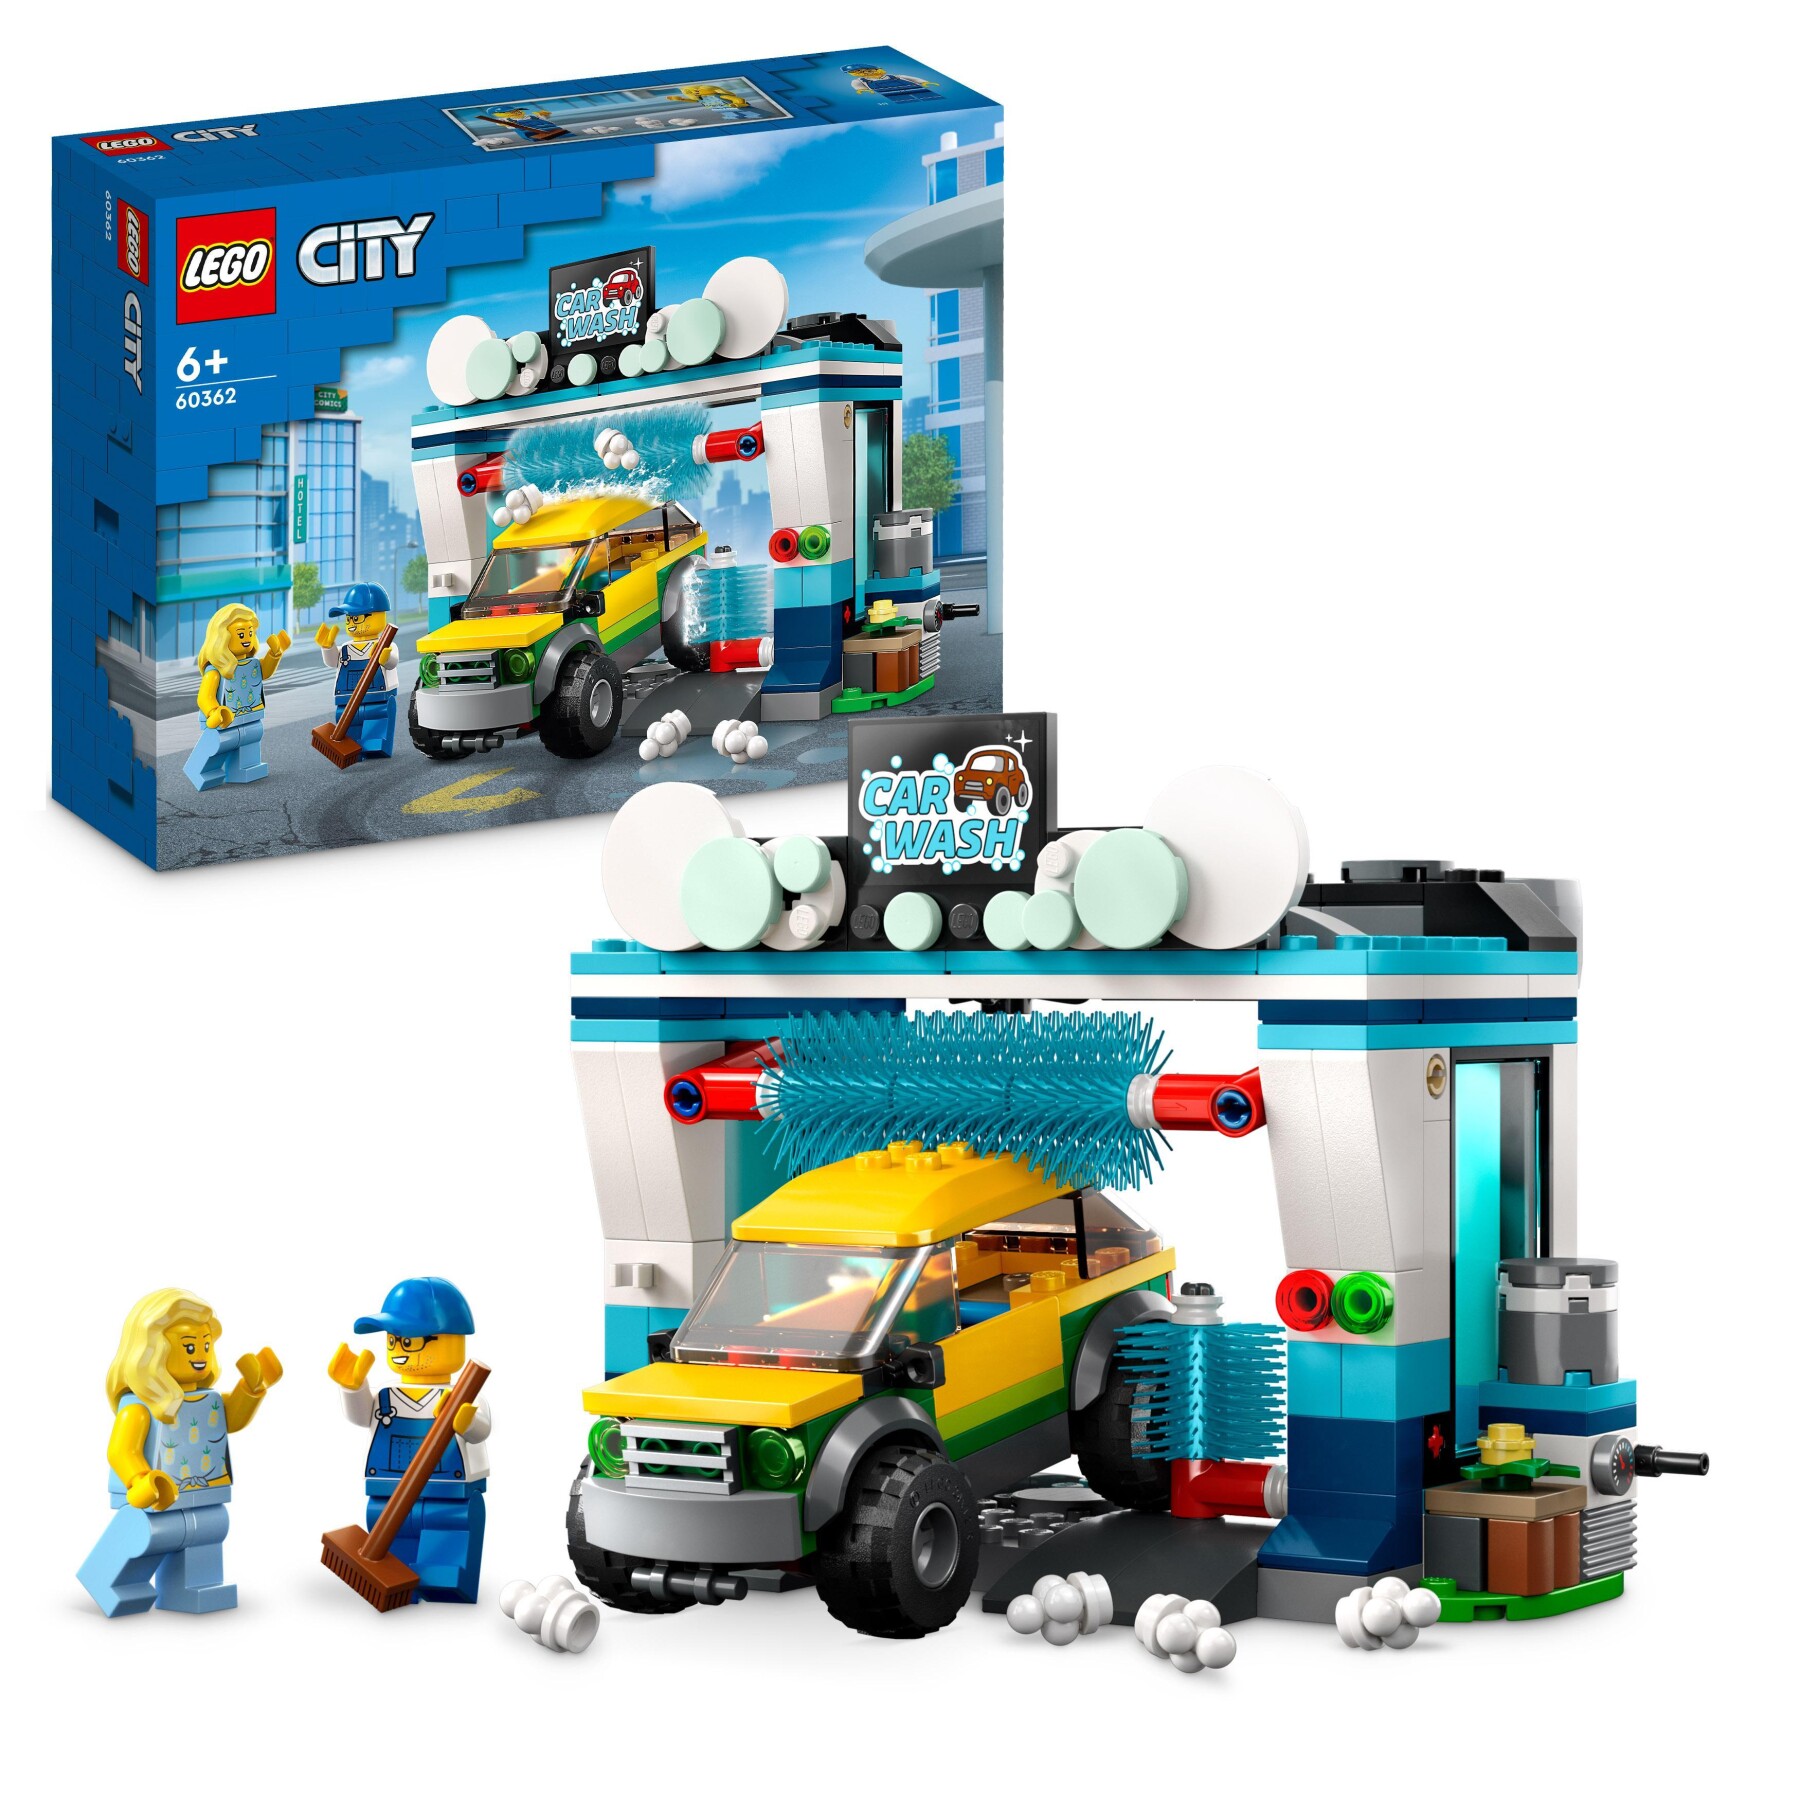 Lego city 60362 autolavaggio, gioco per bambini 6+ anni con spazzole rotanti, macchina giocattolo e 2 minifigure, idea regalo - LEGO CITY